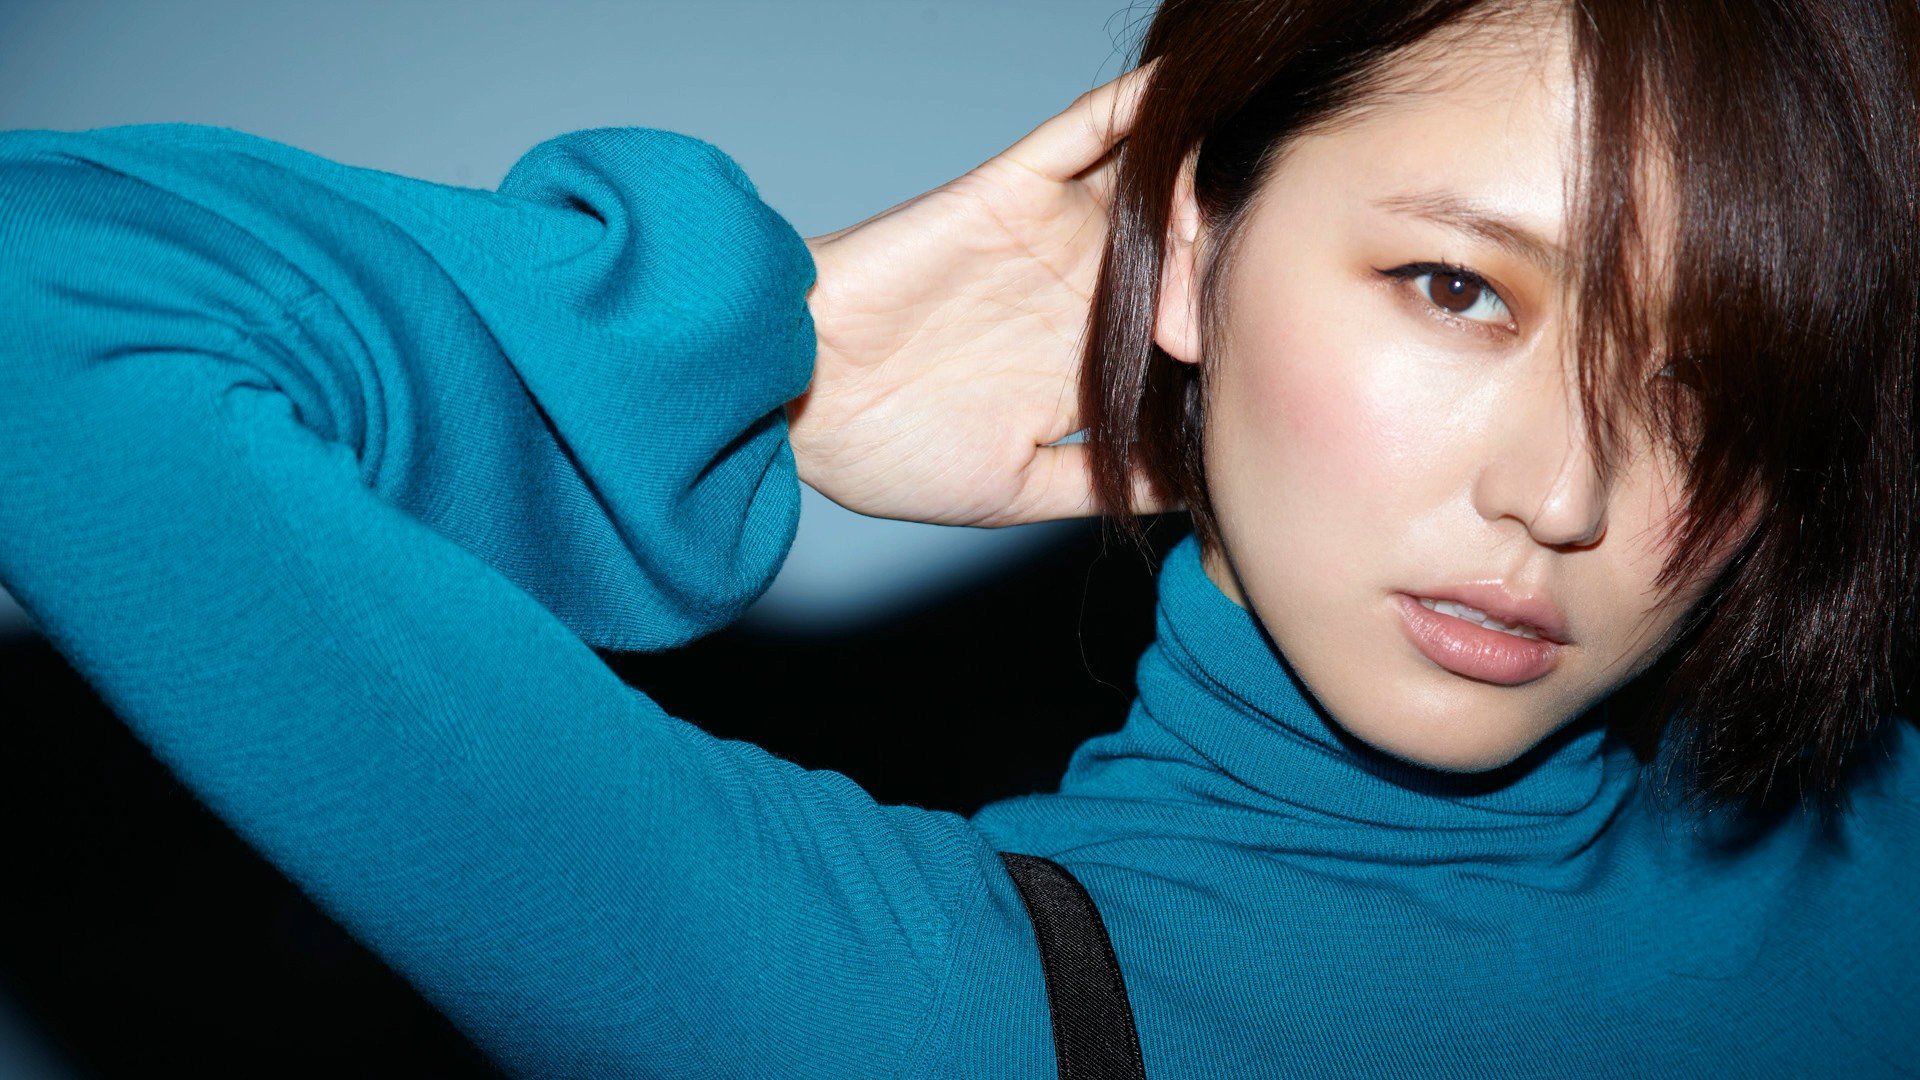 Masami Nagasawa, Women, Asian, Hair in face, Short hair, Arms up, Turtlenecks Wallpaper